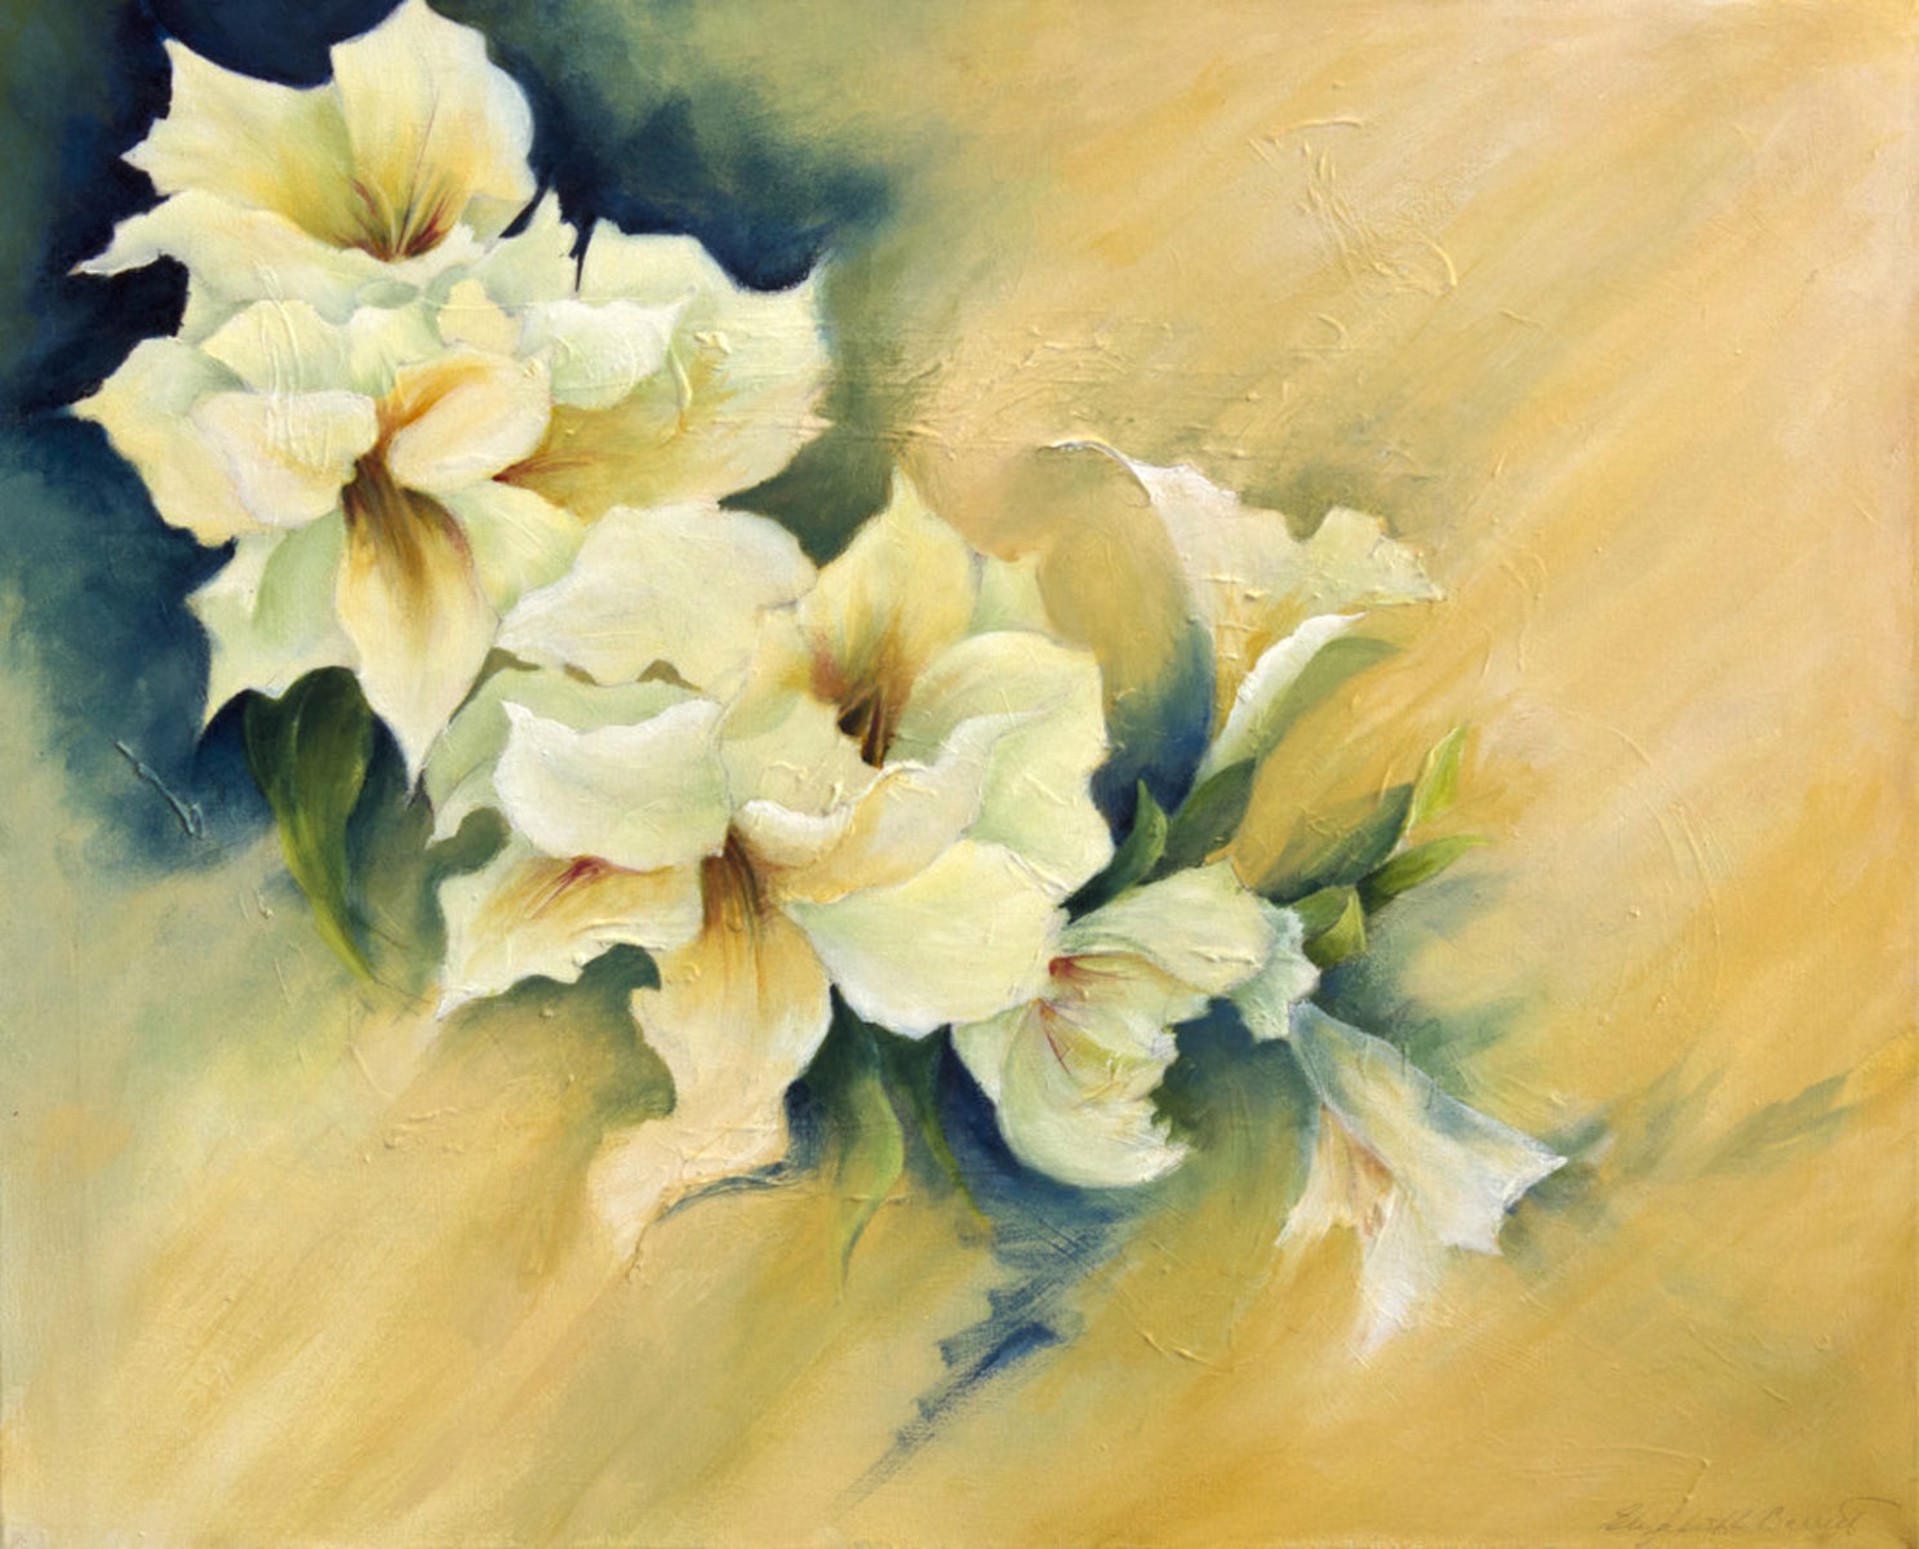 Cascading Lilies by Elizabeth Barrett